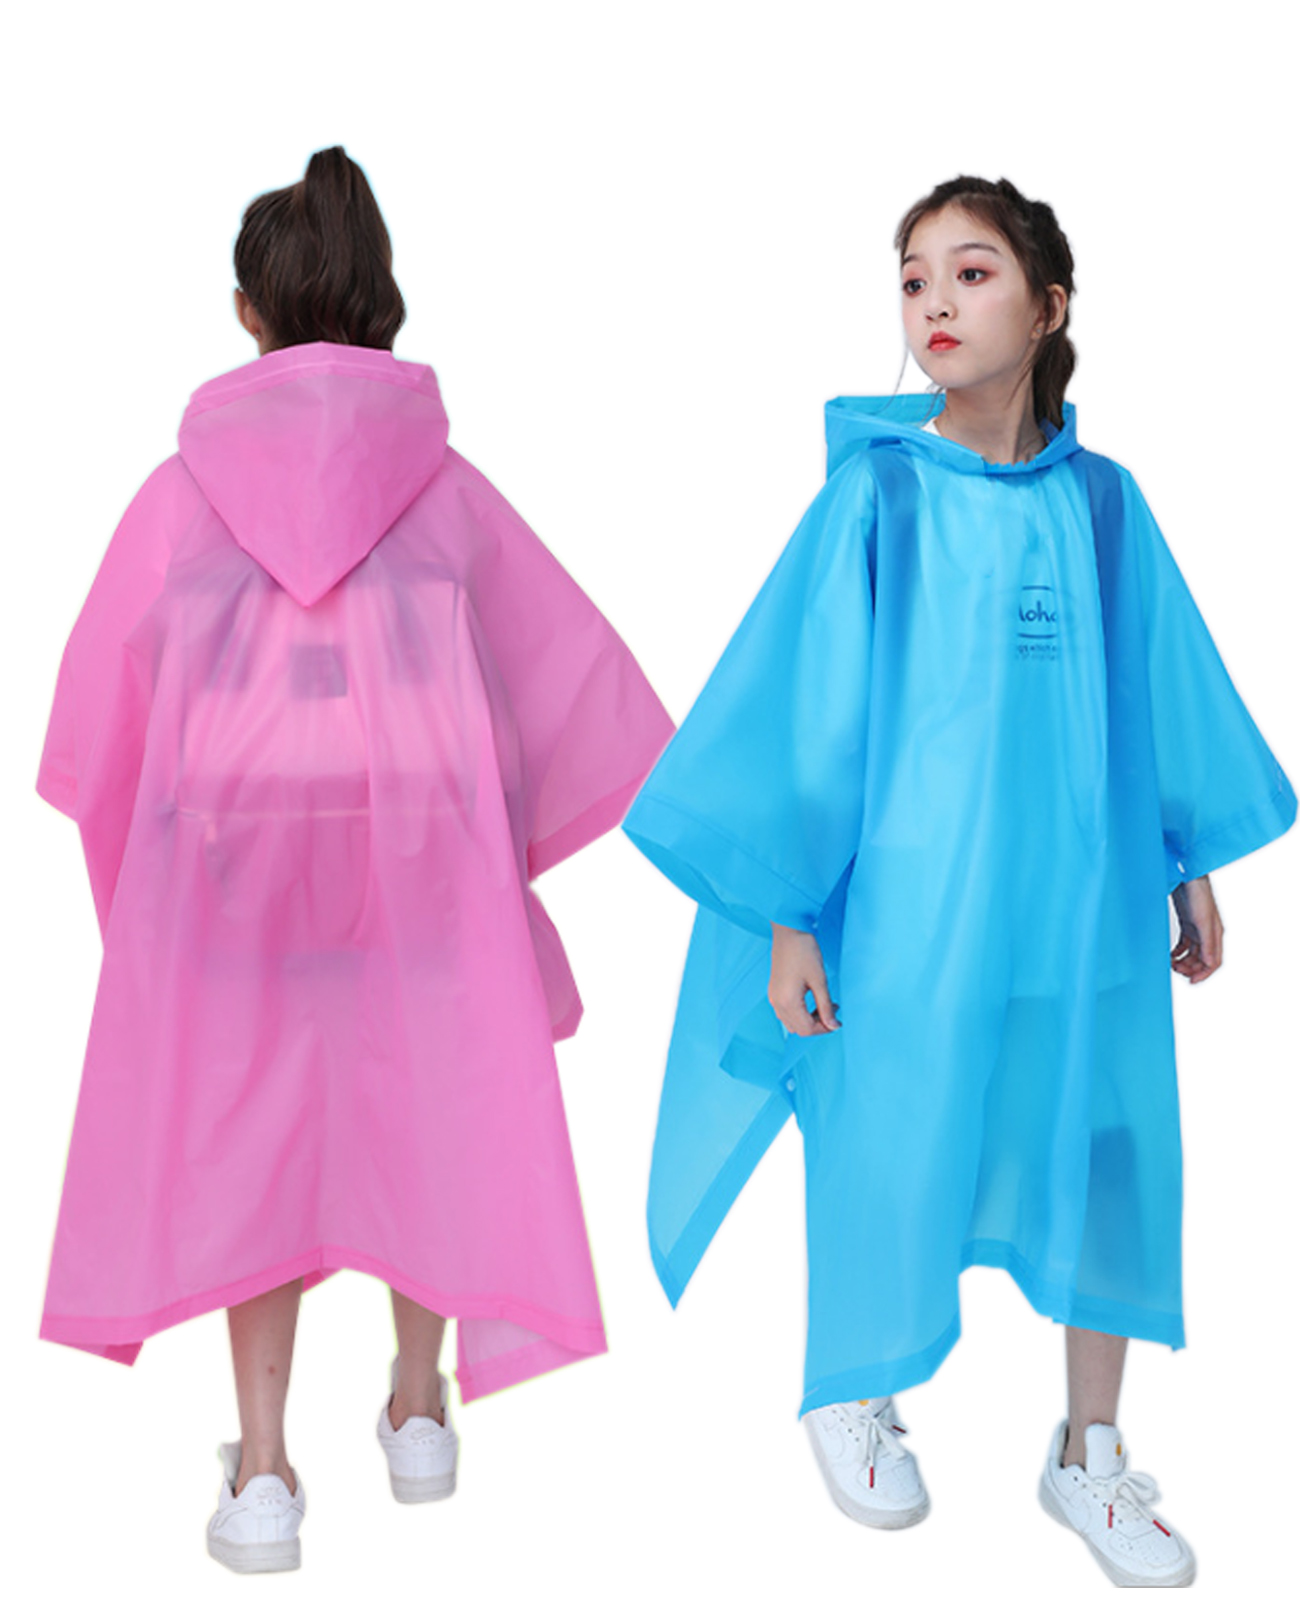 Makonus Rain Ponchos for Kids, [2 Pack] EVA Reusable Raincoat for Boys & Girls, Blue & Pink